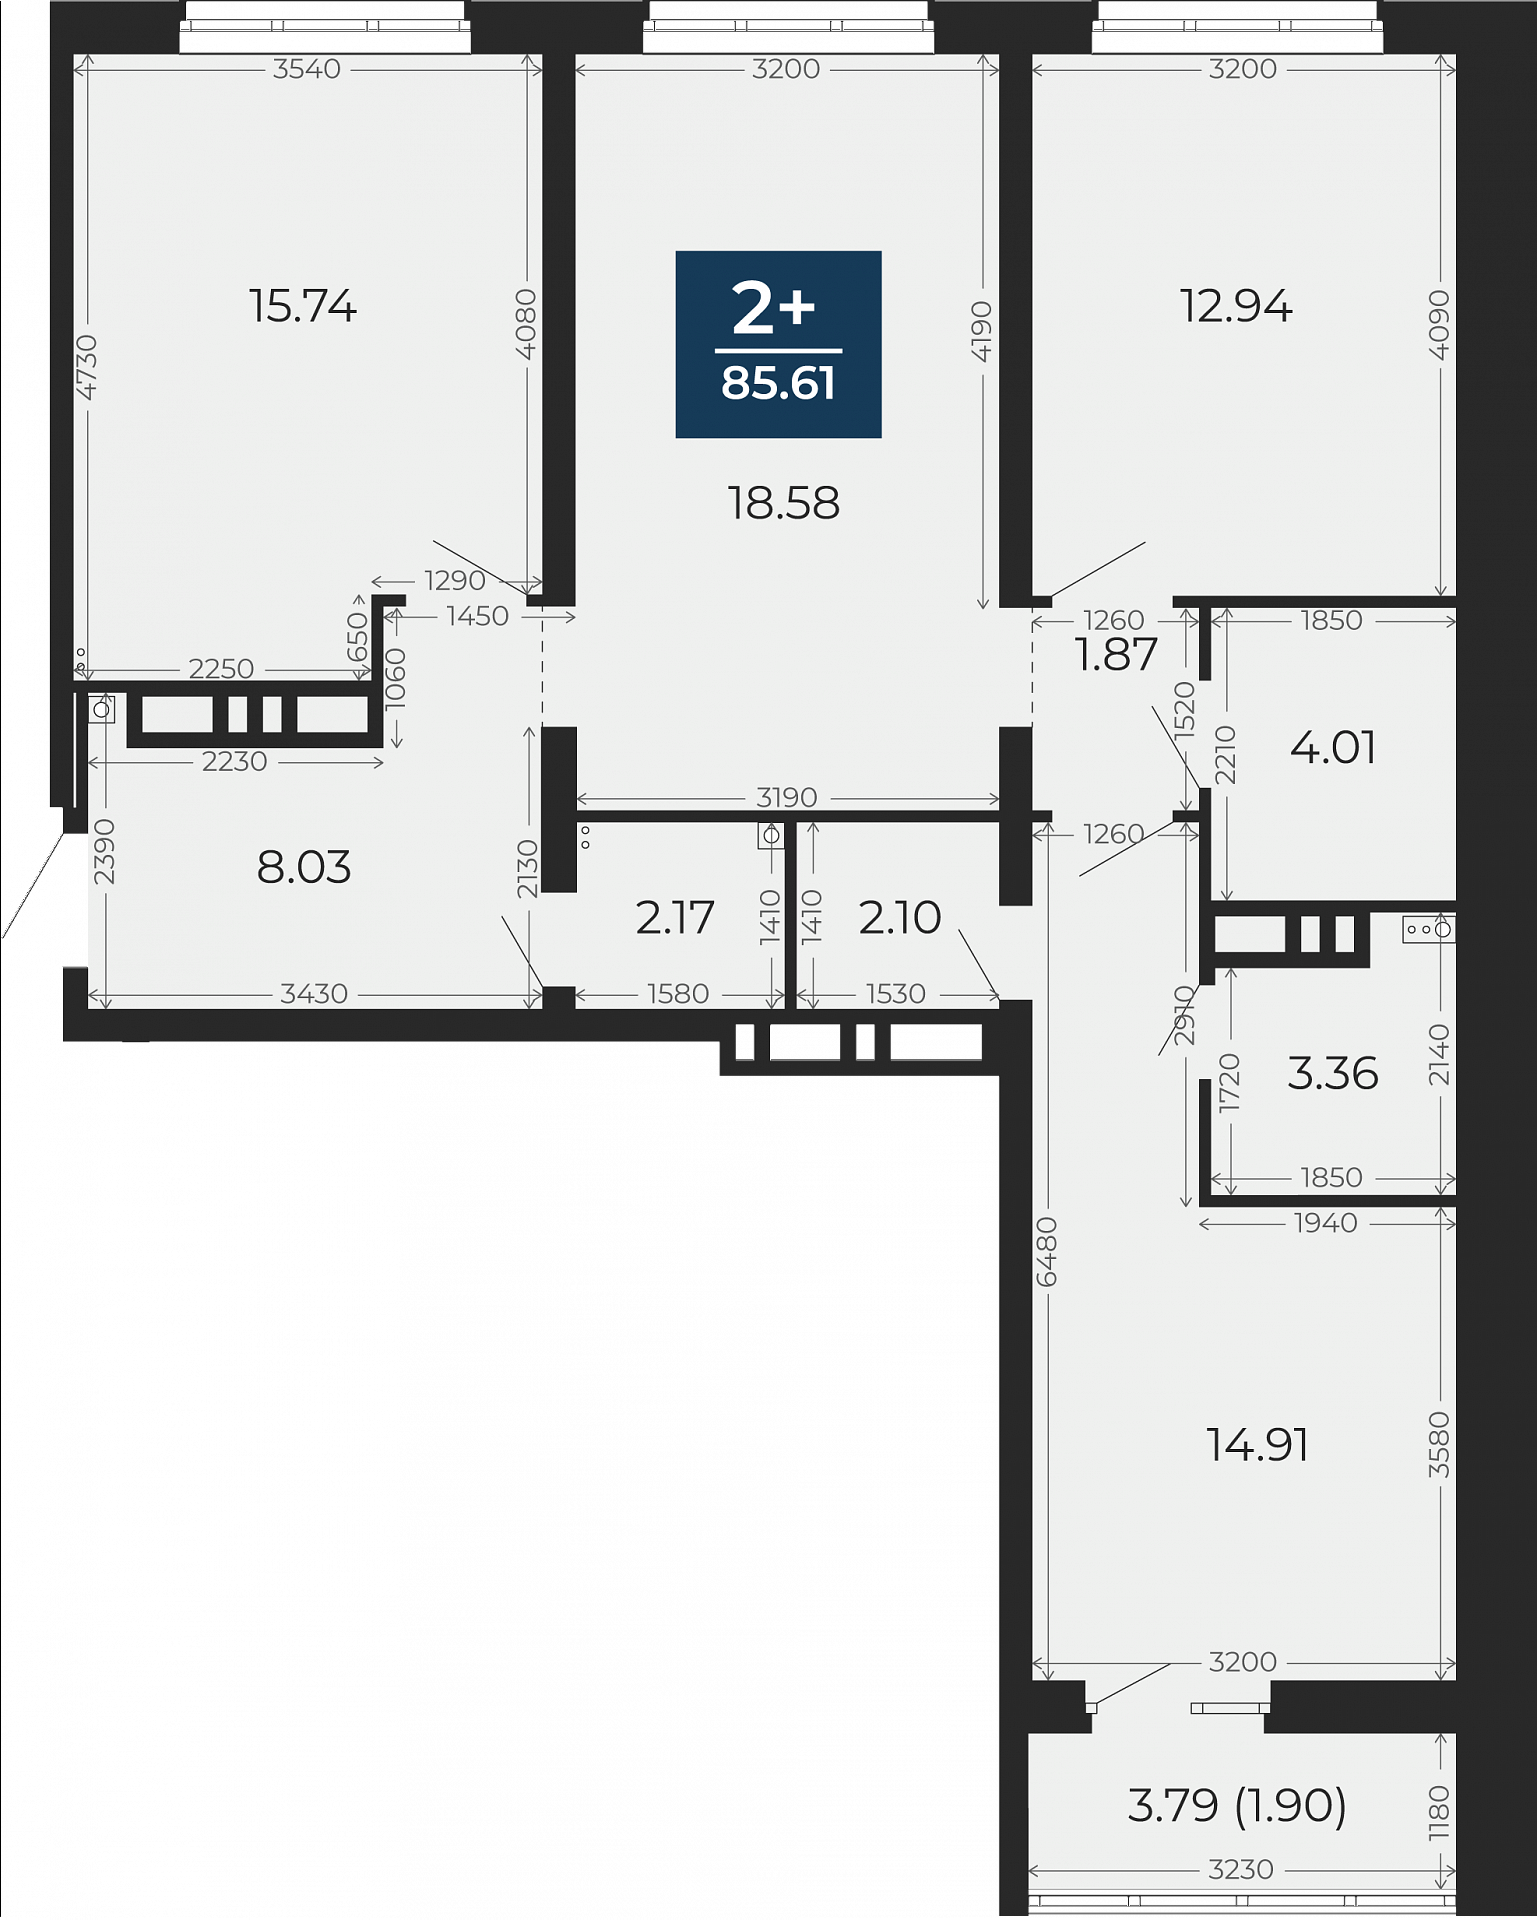 Квартира № 165, 2-комнатная, 85.61 кв. м, 3 этаж